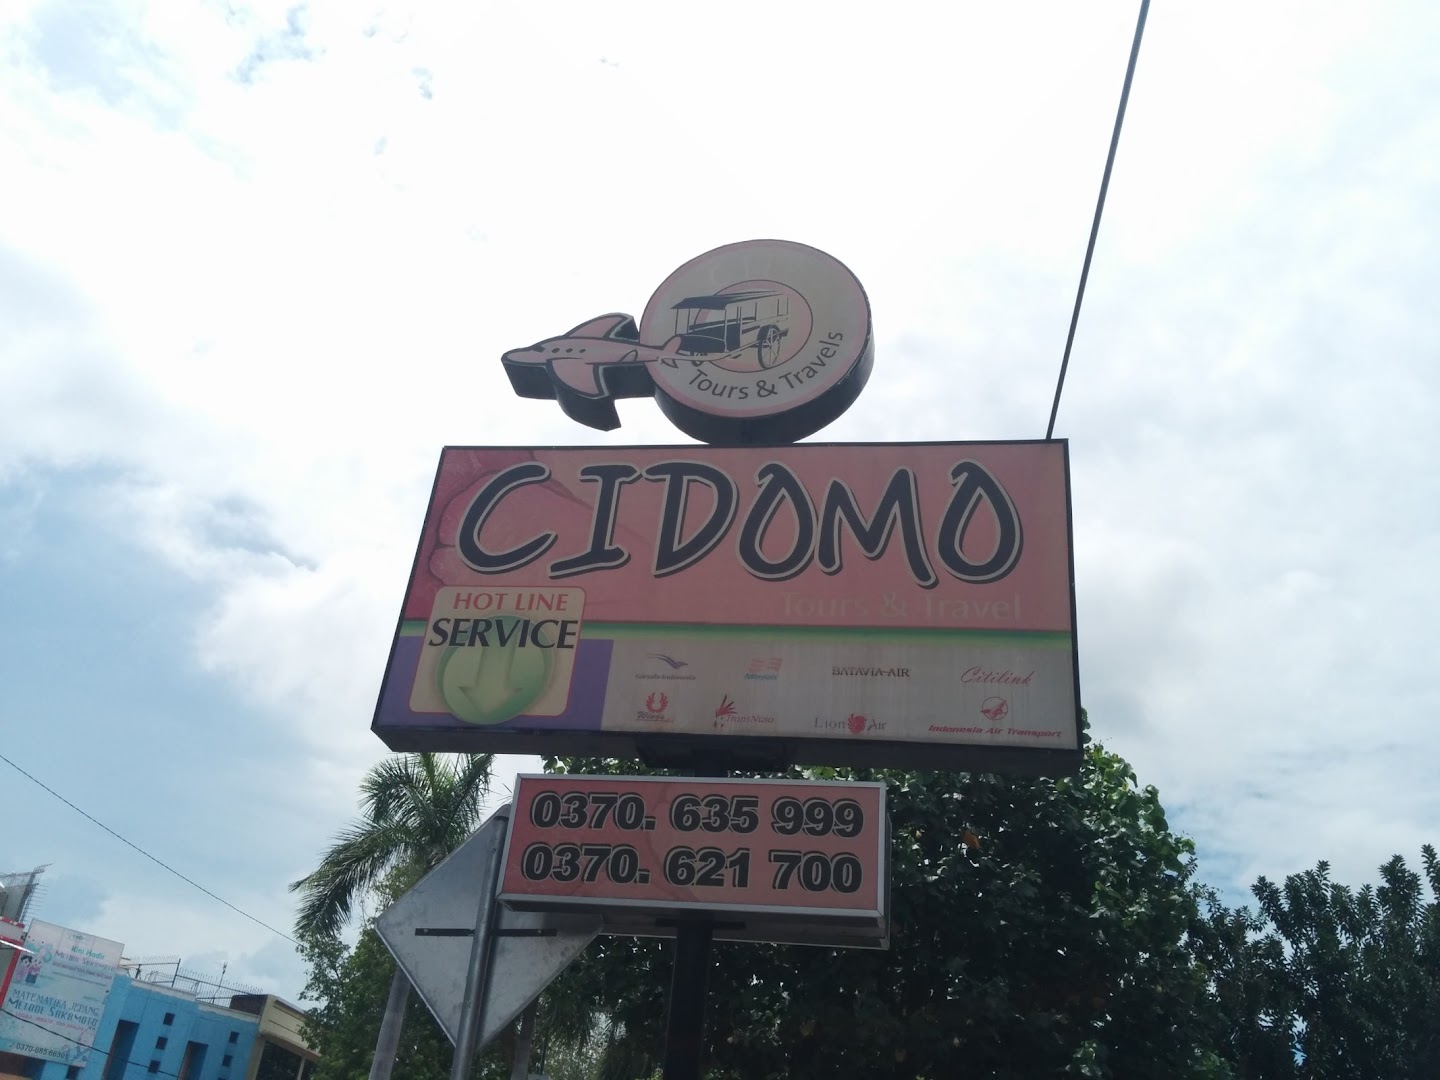 Gambar Cidomo Tours & Travel